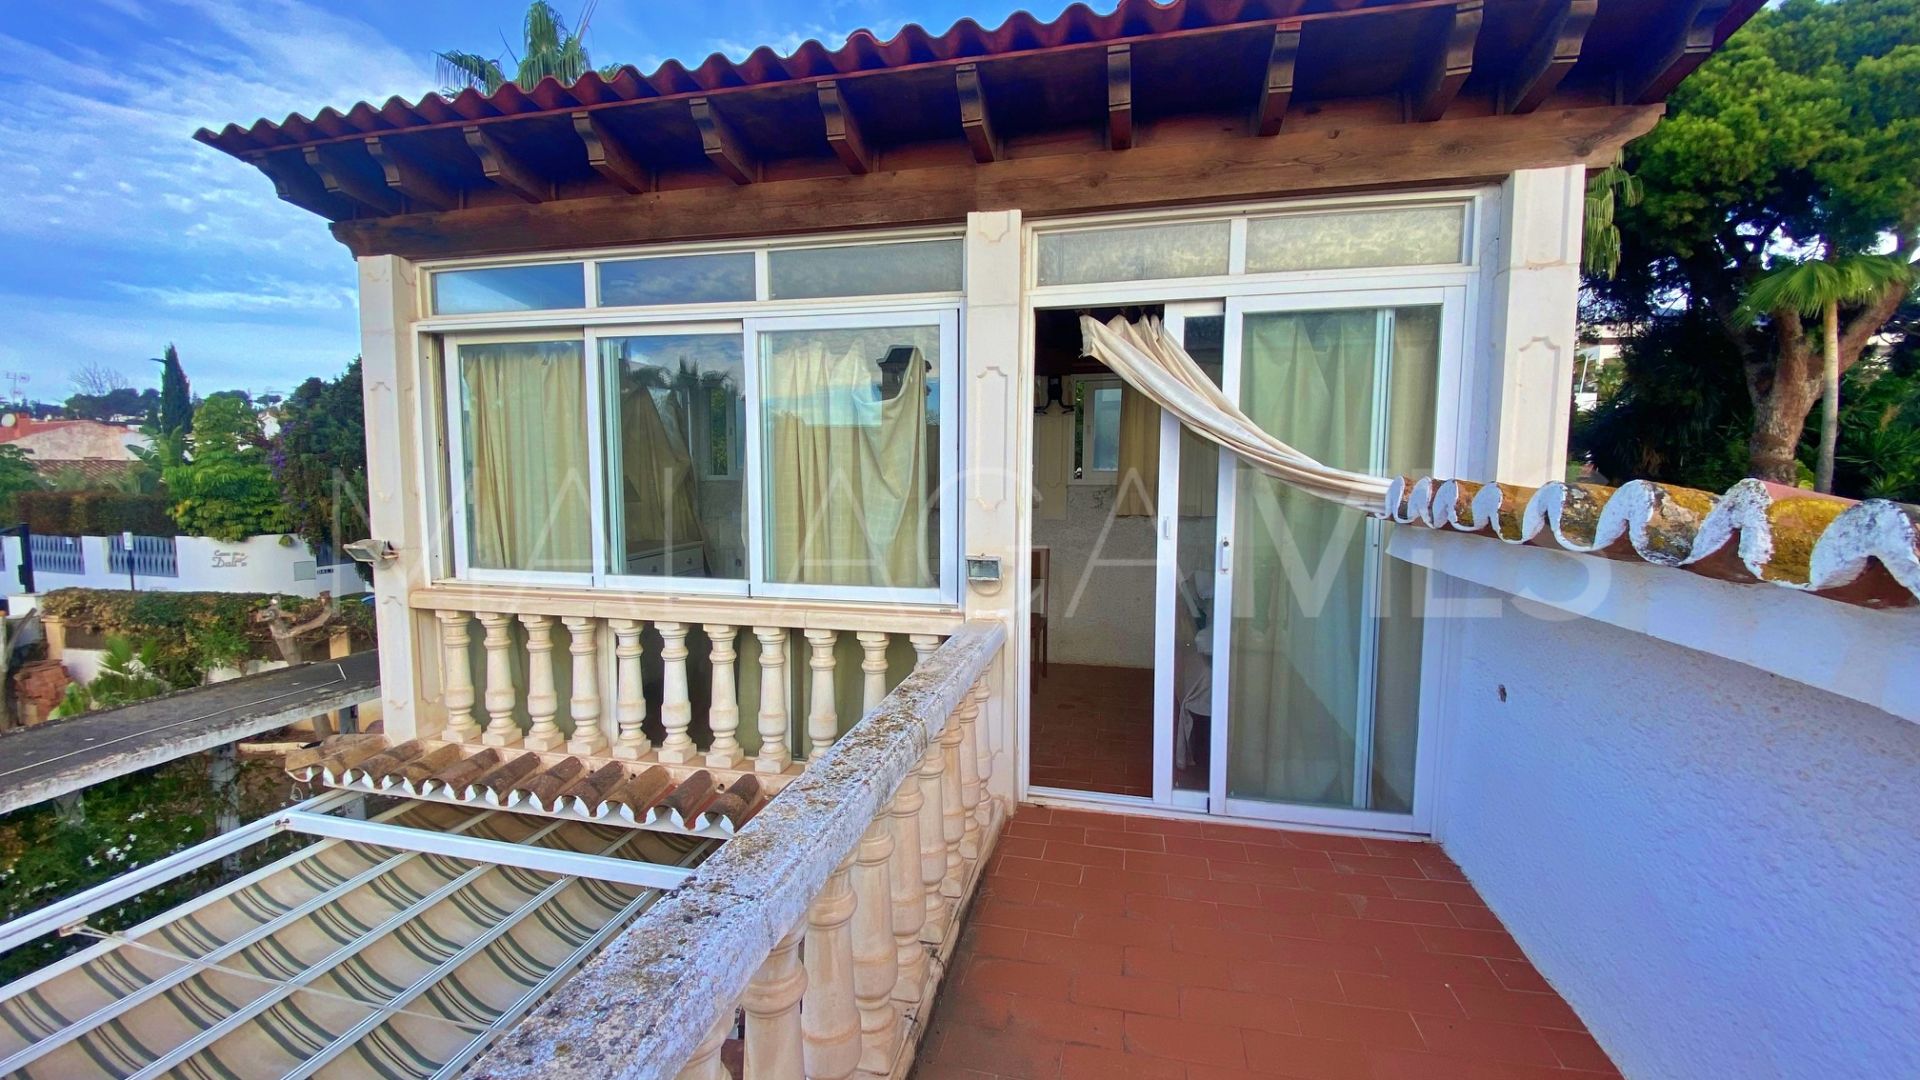 3 bedrooms villa in Casablanca for sale